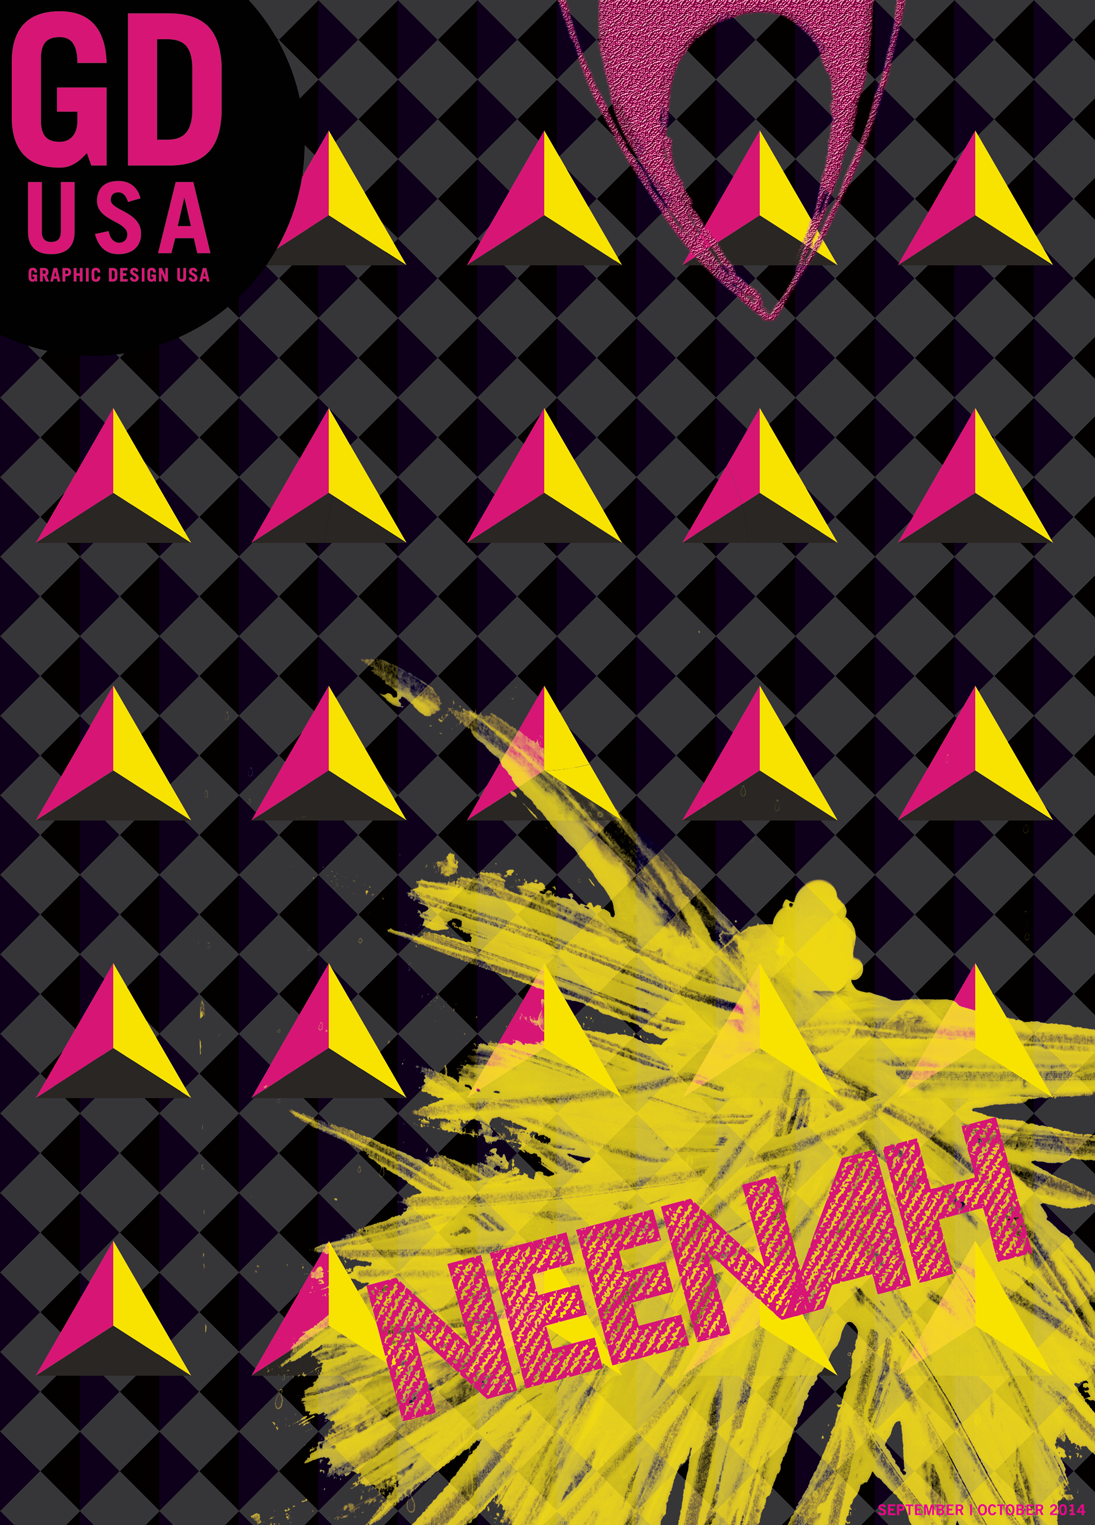 GD USA cover design